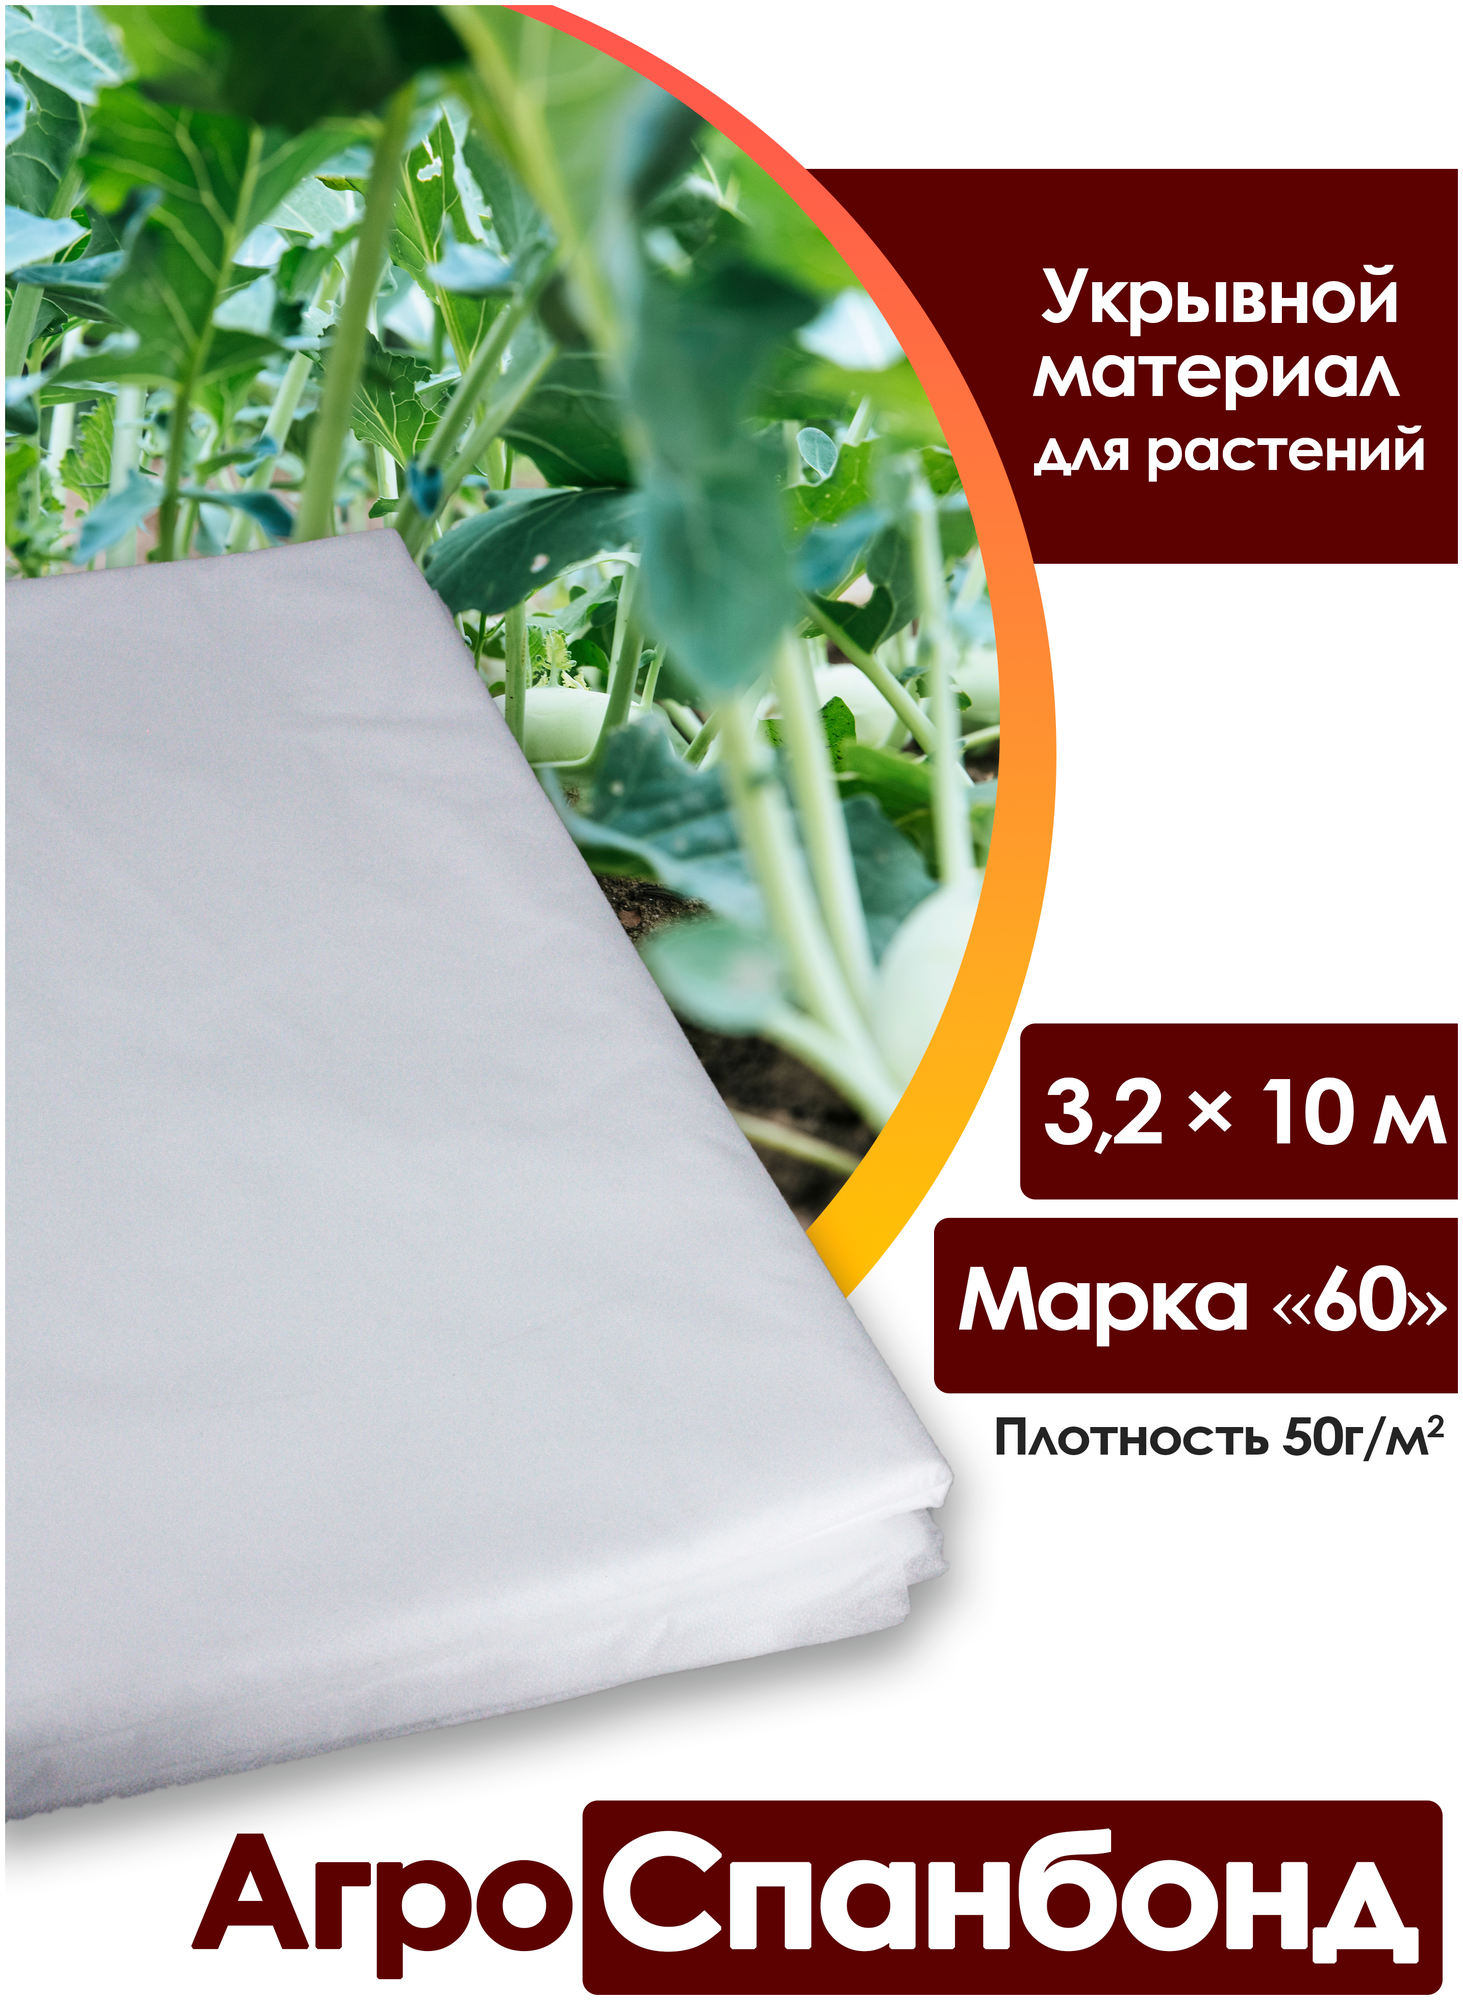 Body Pillow Спанбонд укрывной 3,2х10 м плотностью 50 г/м2, Марка 60 / Агротекстиль для теплиц, растений / Нетканый укрывной материал